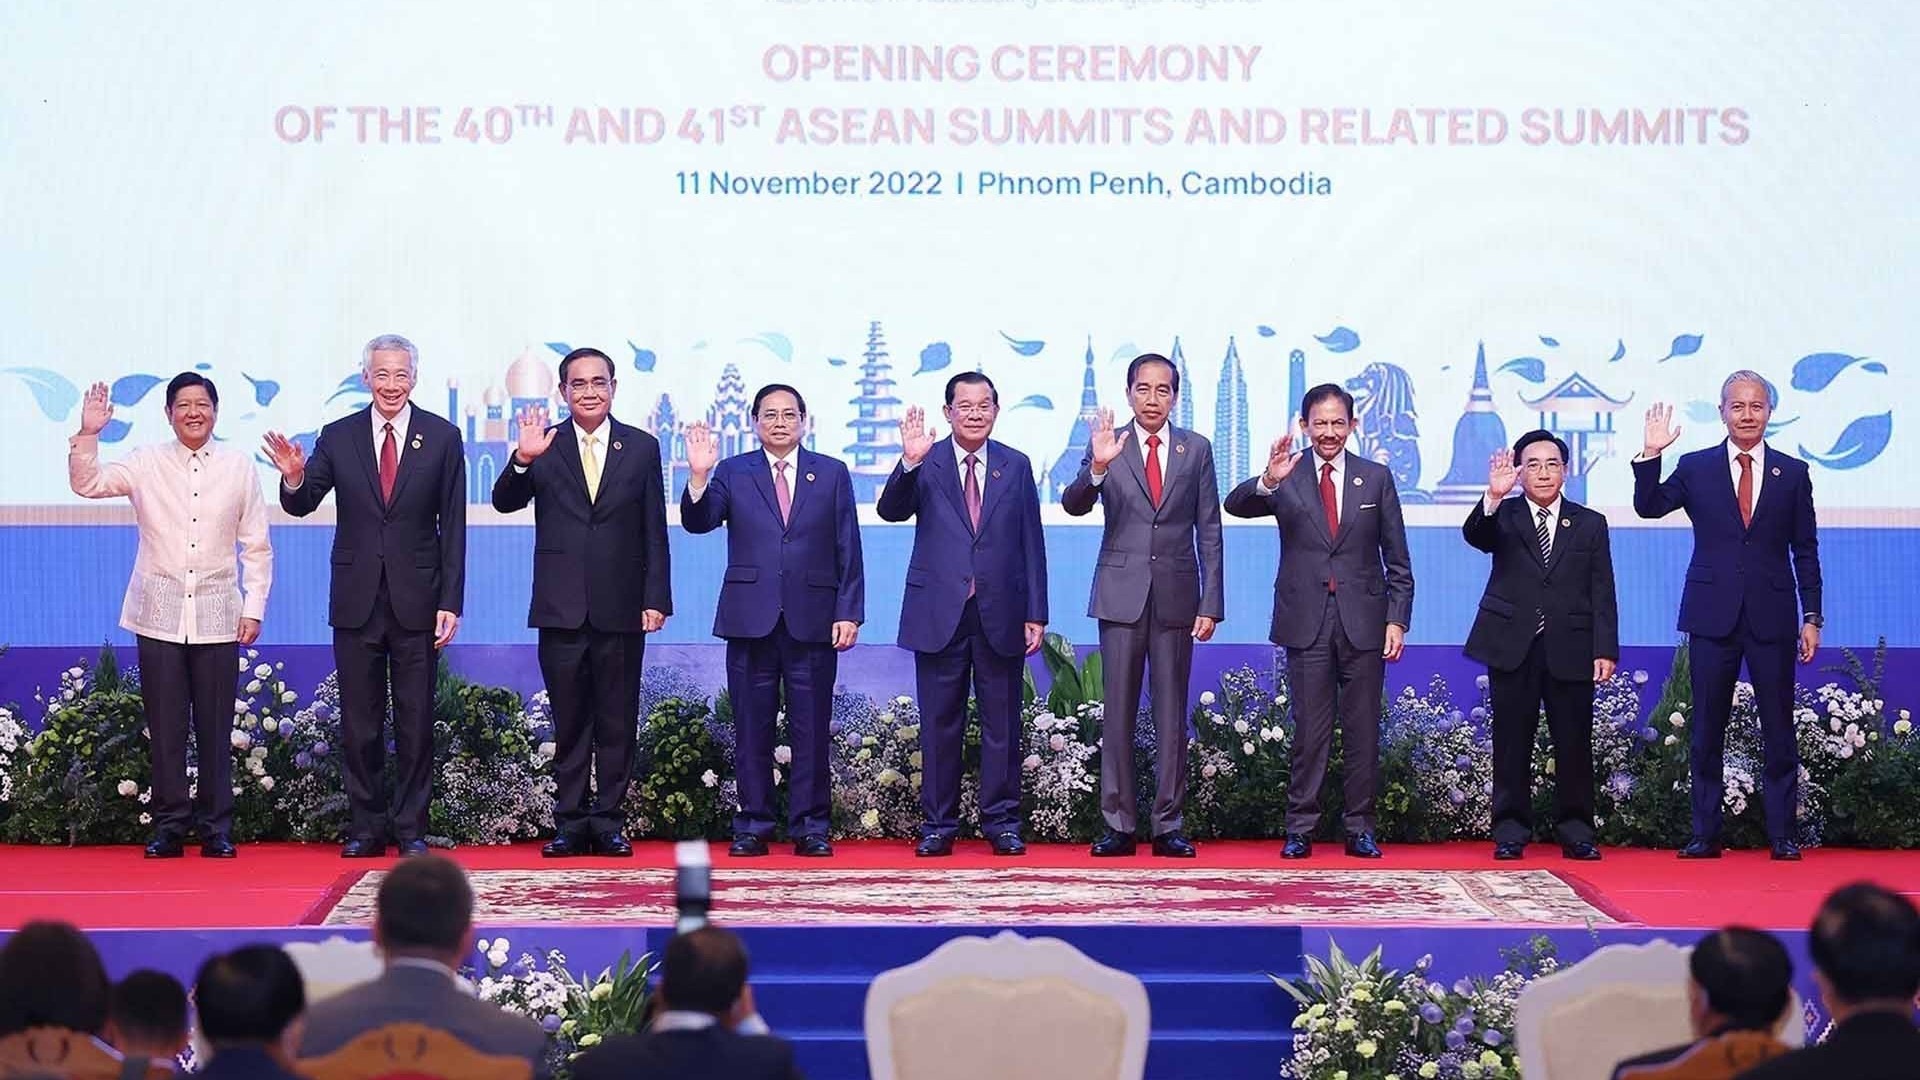 Hội nghị cấp cao ASEAN lần thứ 40, 41 chính thức khai mạc